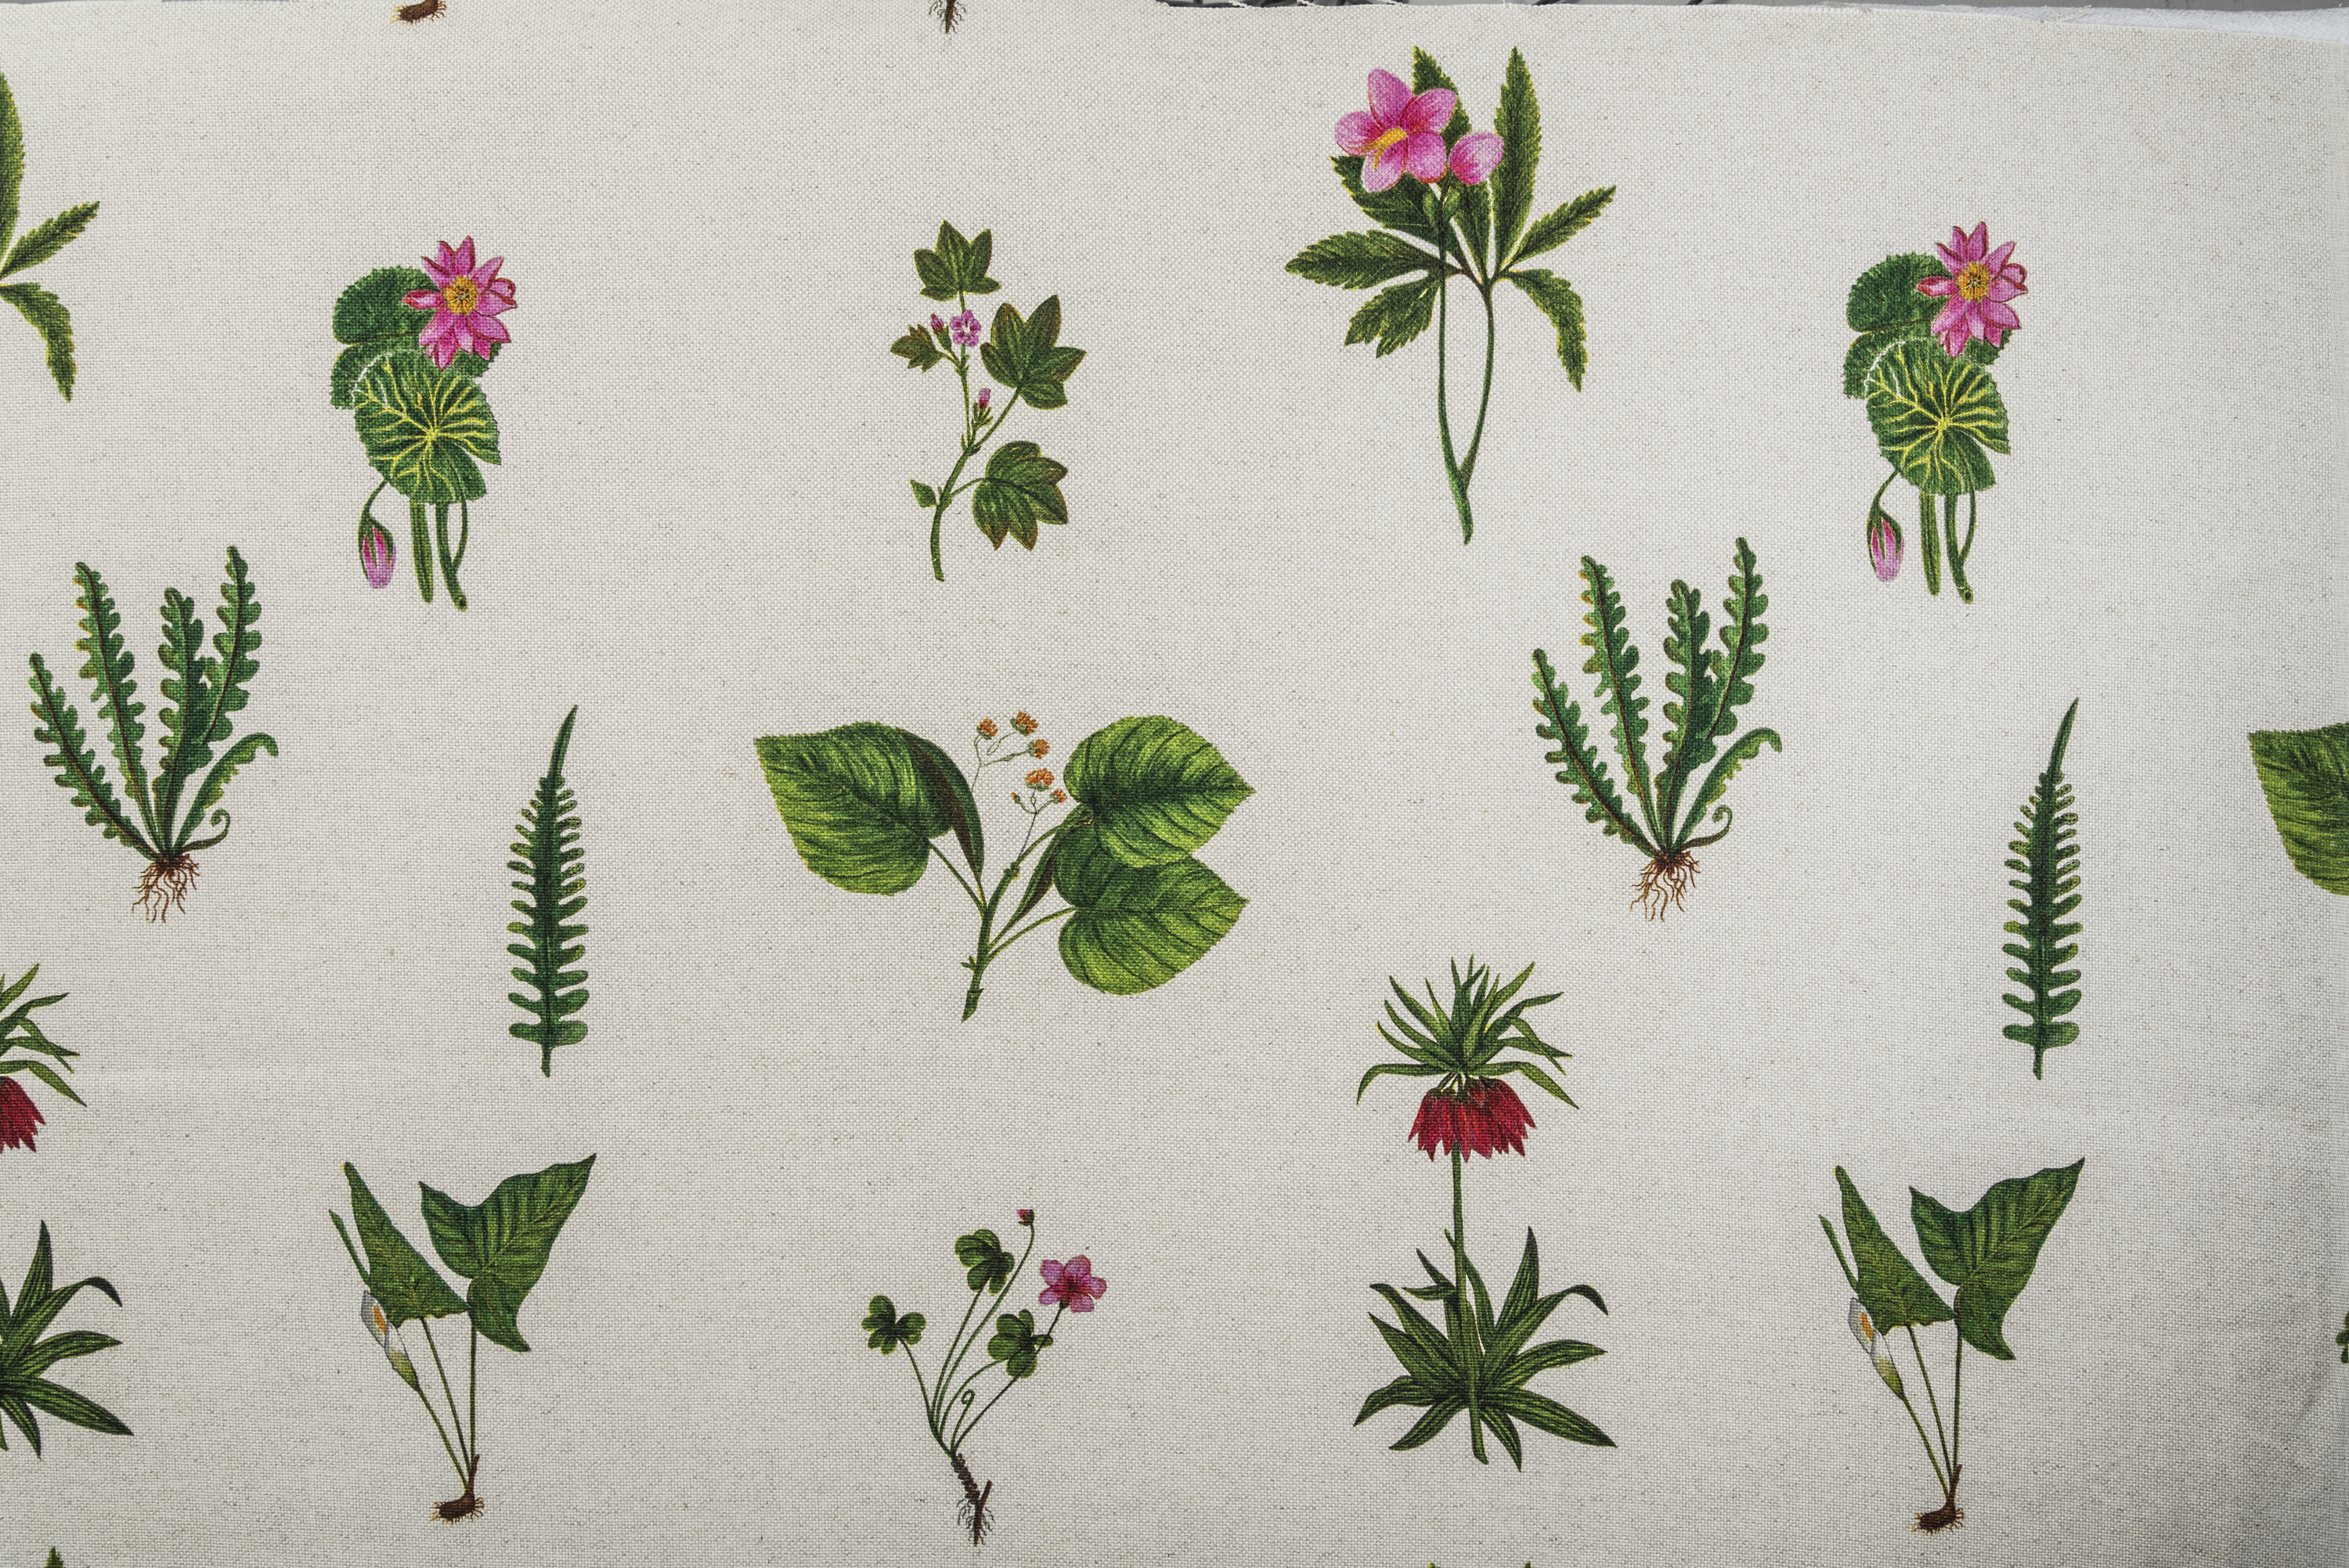 Estampa Botanica, por Dan Fialdini. “A Mata Atlântica possui uma diversidade extraordinária de flores exóticas e eu poderia passar dias pintando todas elas”. Imagem: Edson Garcia.